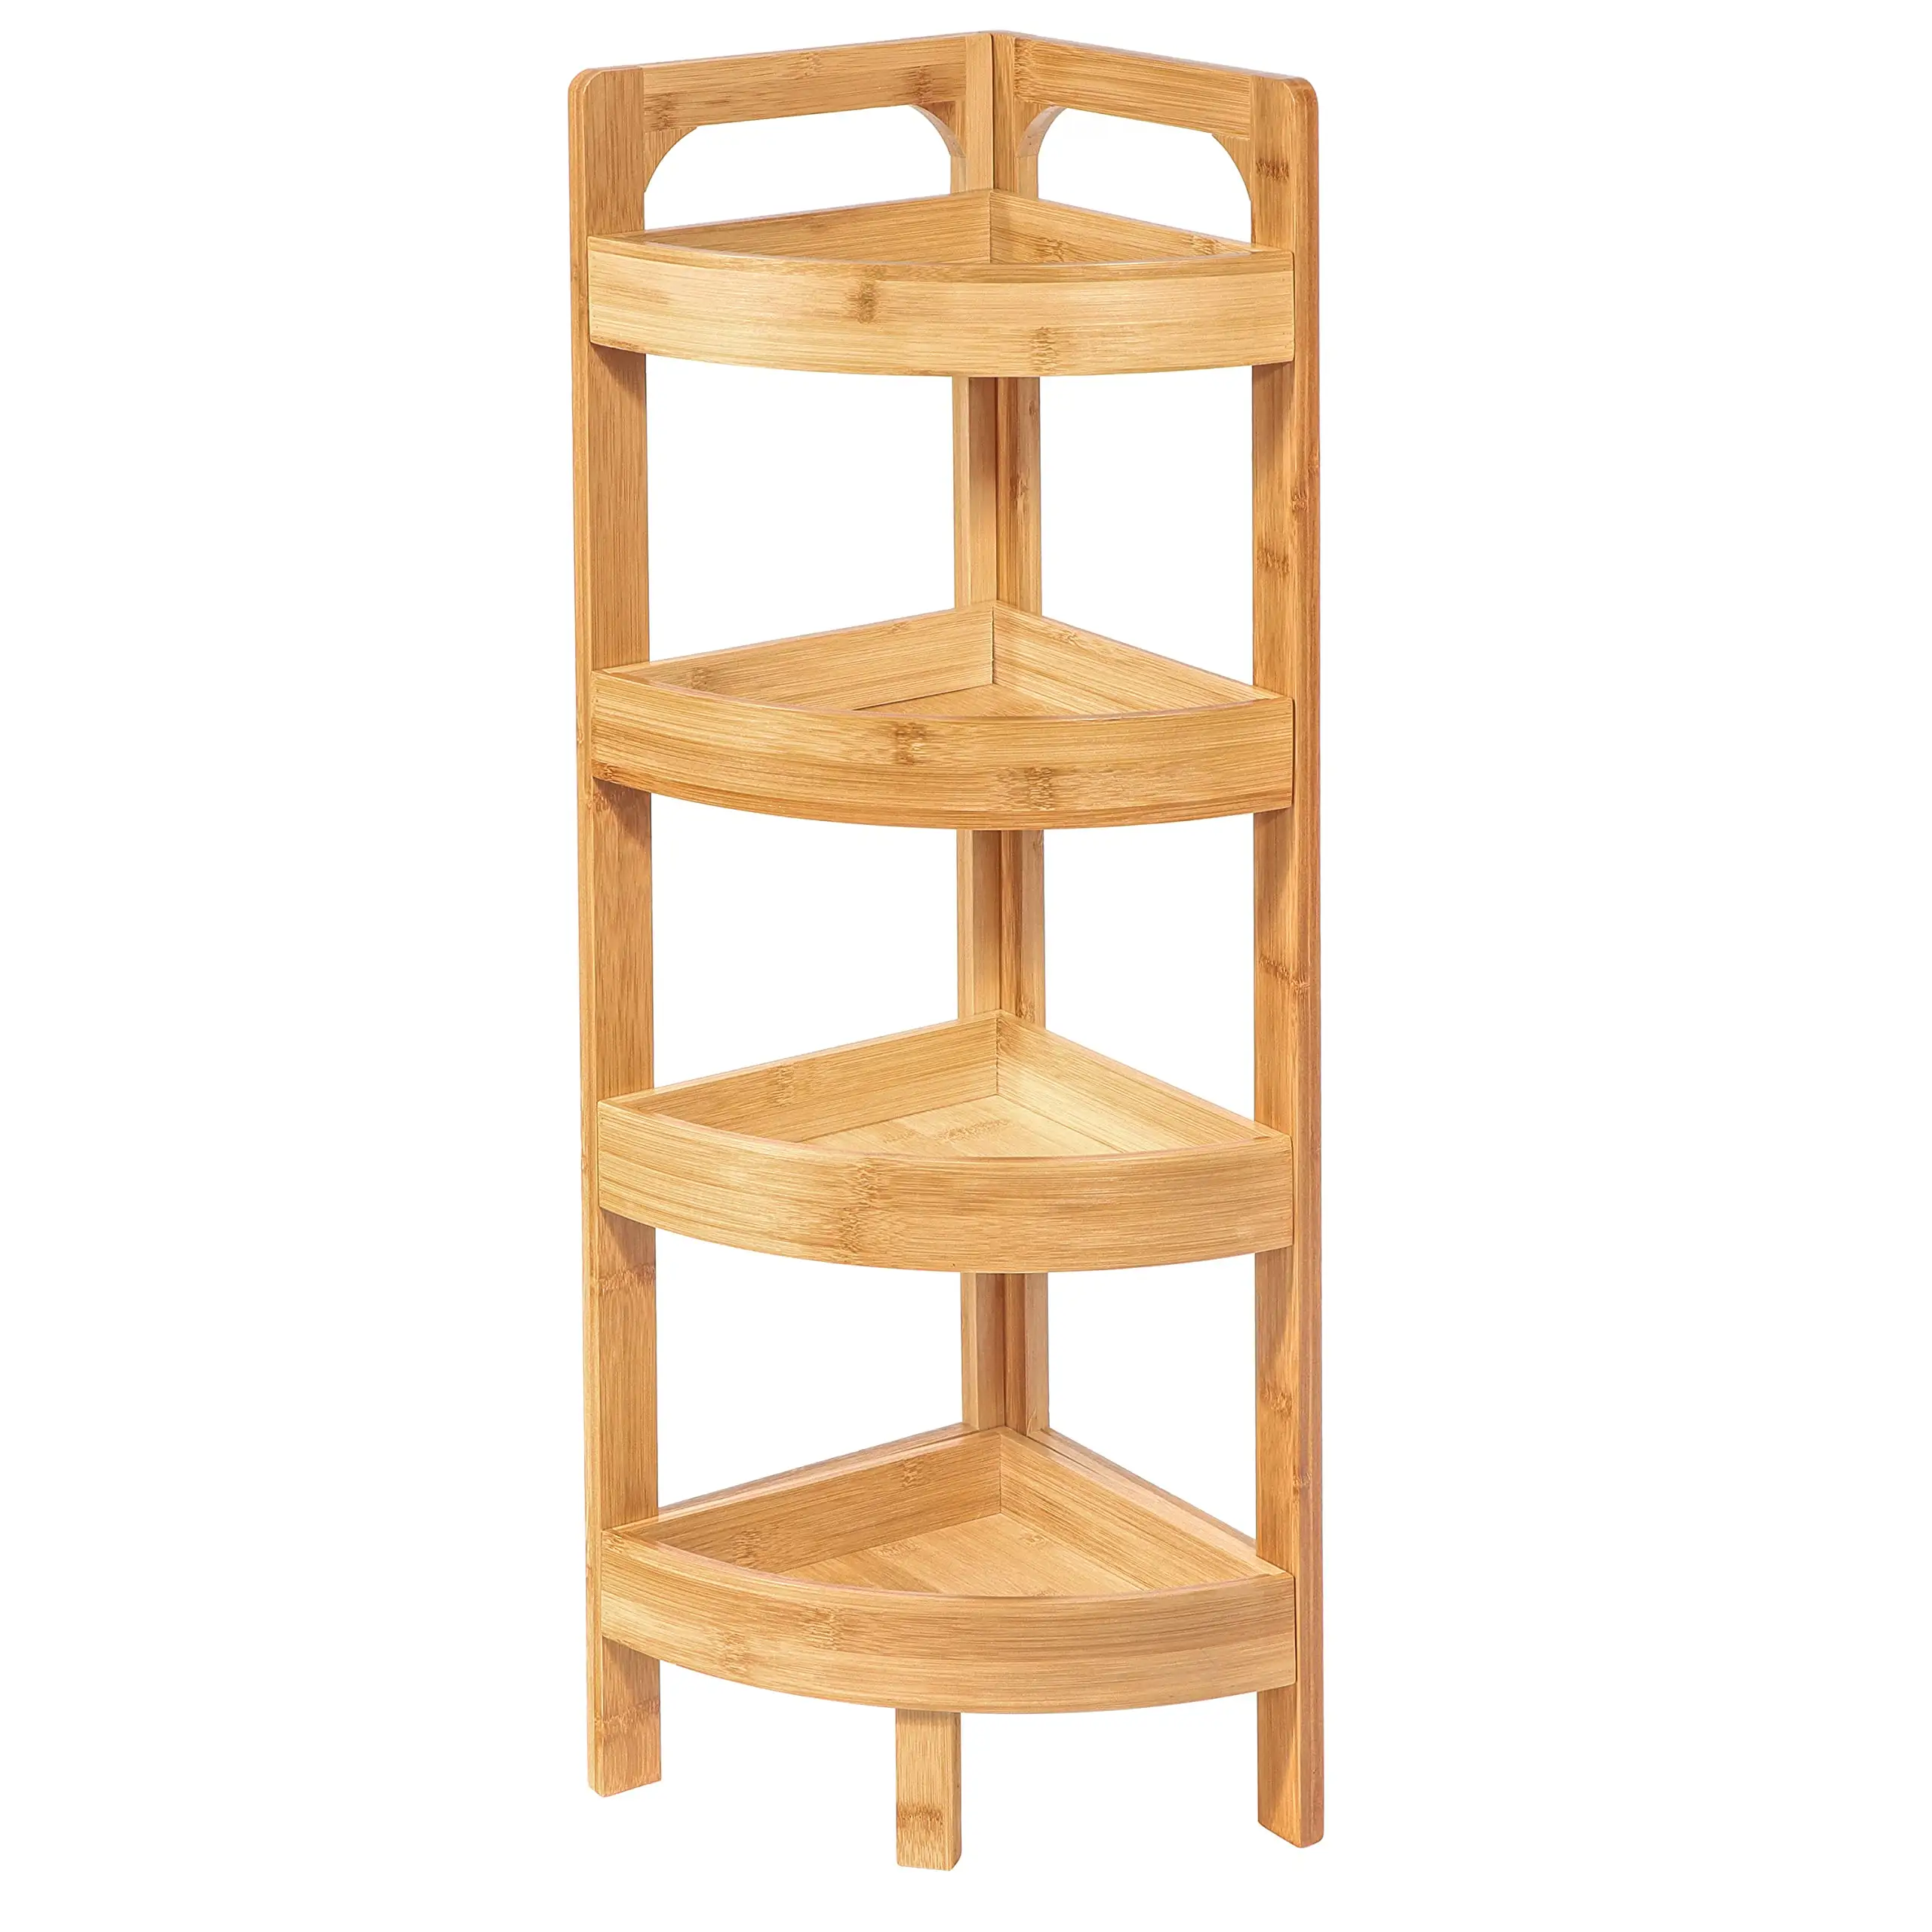 4 livelli di bambù angolo curvo mensola Organizer Freestanding Display scaffale scaffali libreria per cucina bagno soggiorno